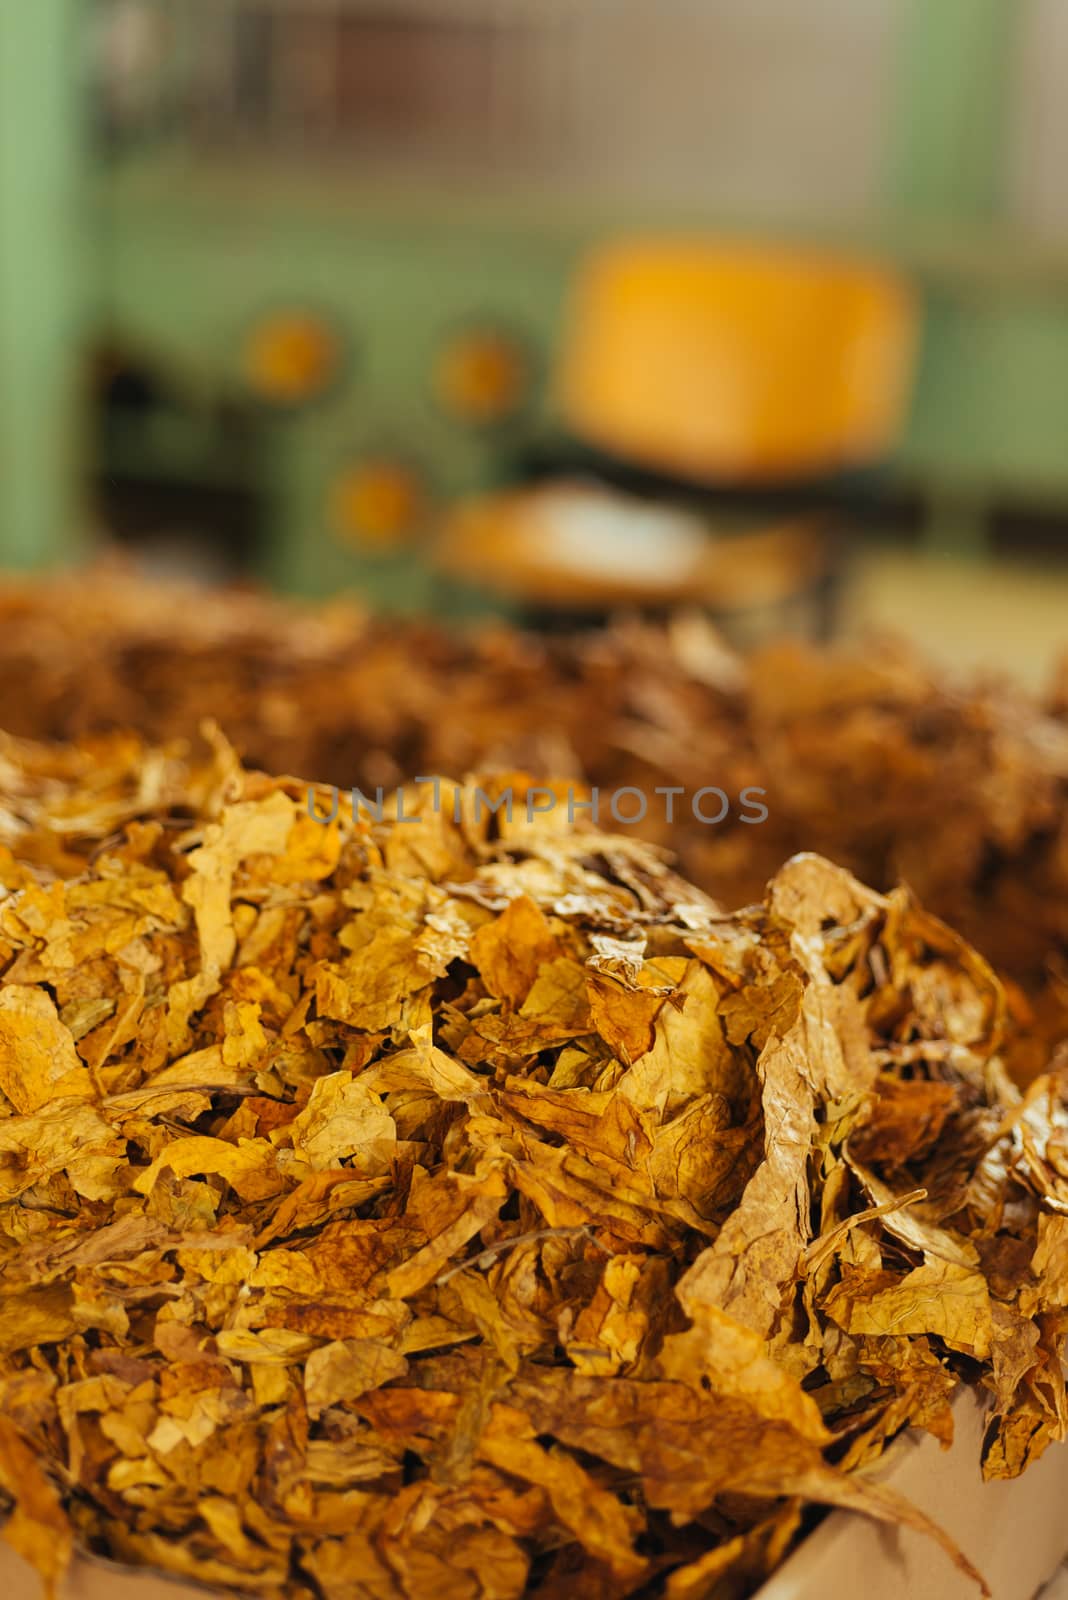 Tobacco prepared for production of cigarettes